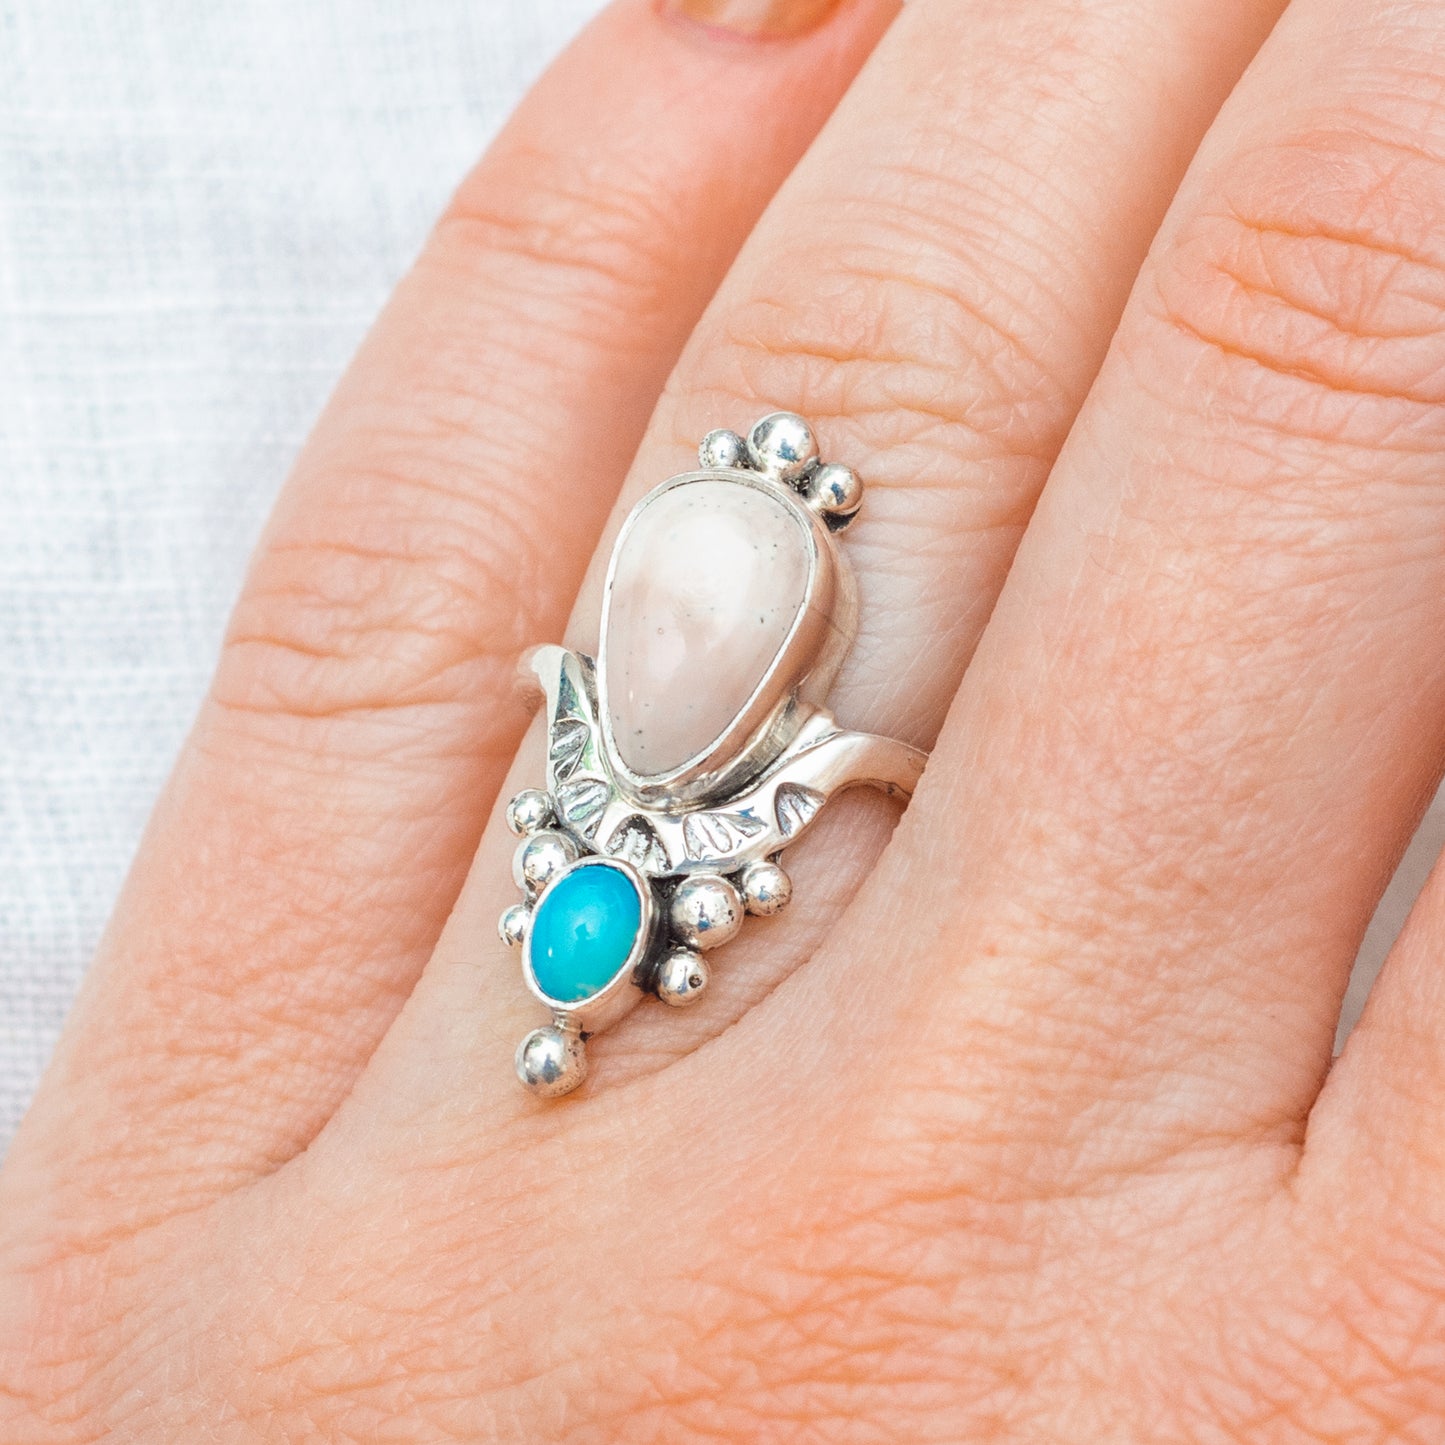 Kindred Embrace Ring ◇ Willow Creek Jasper + Australian Opal ◇ Size 7.5 ◇ Sterling Silver